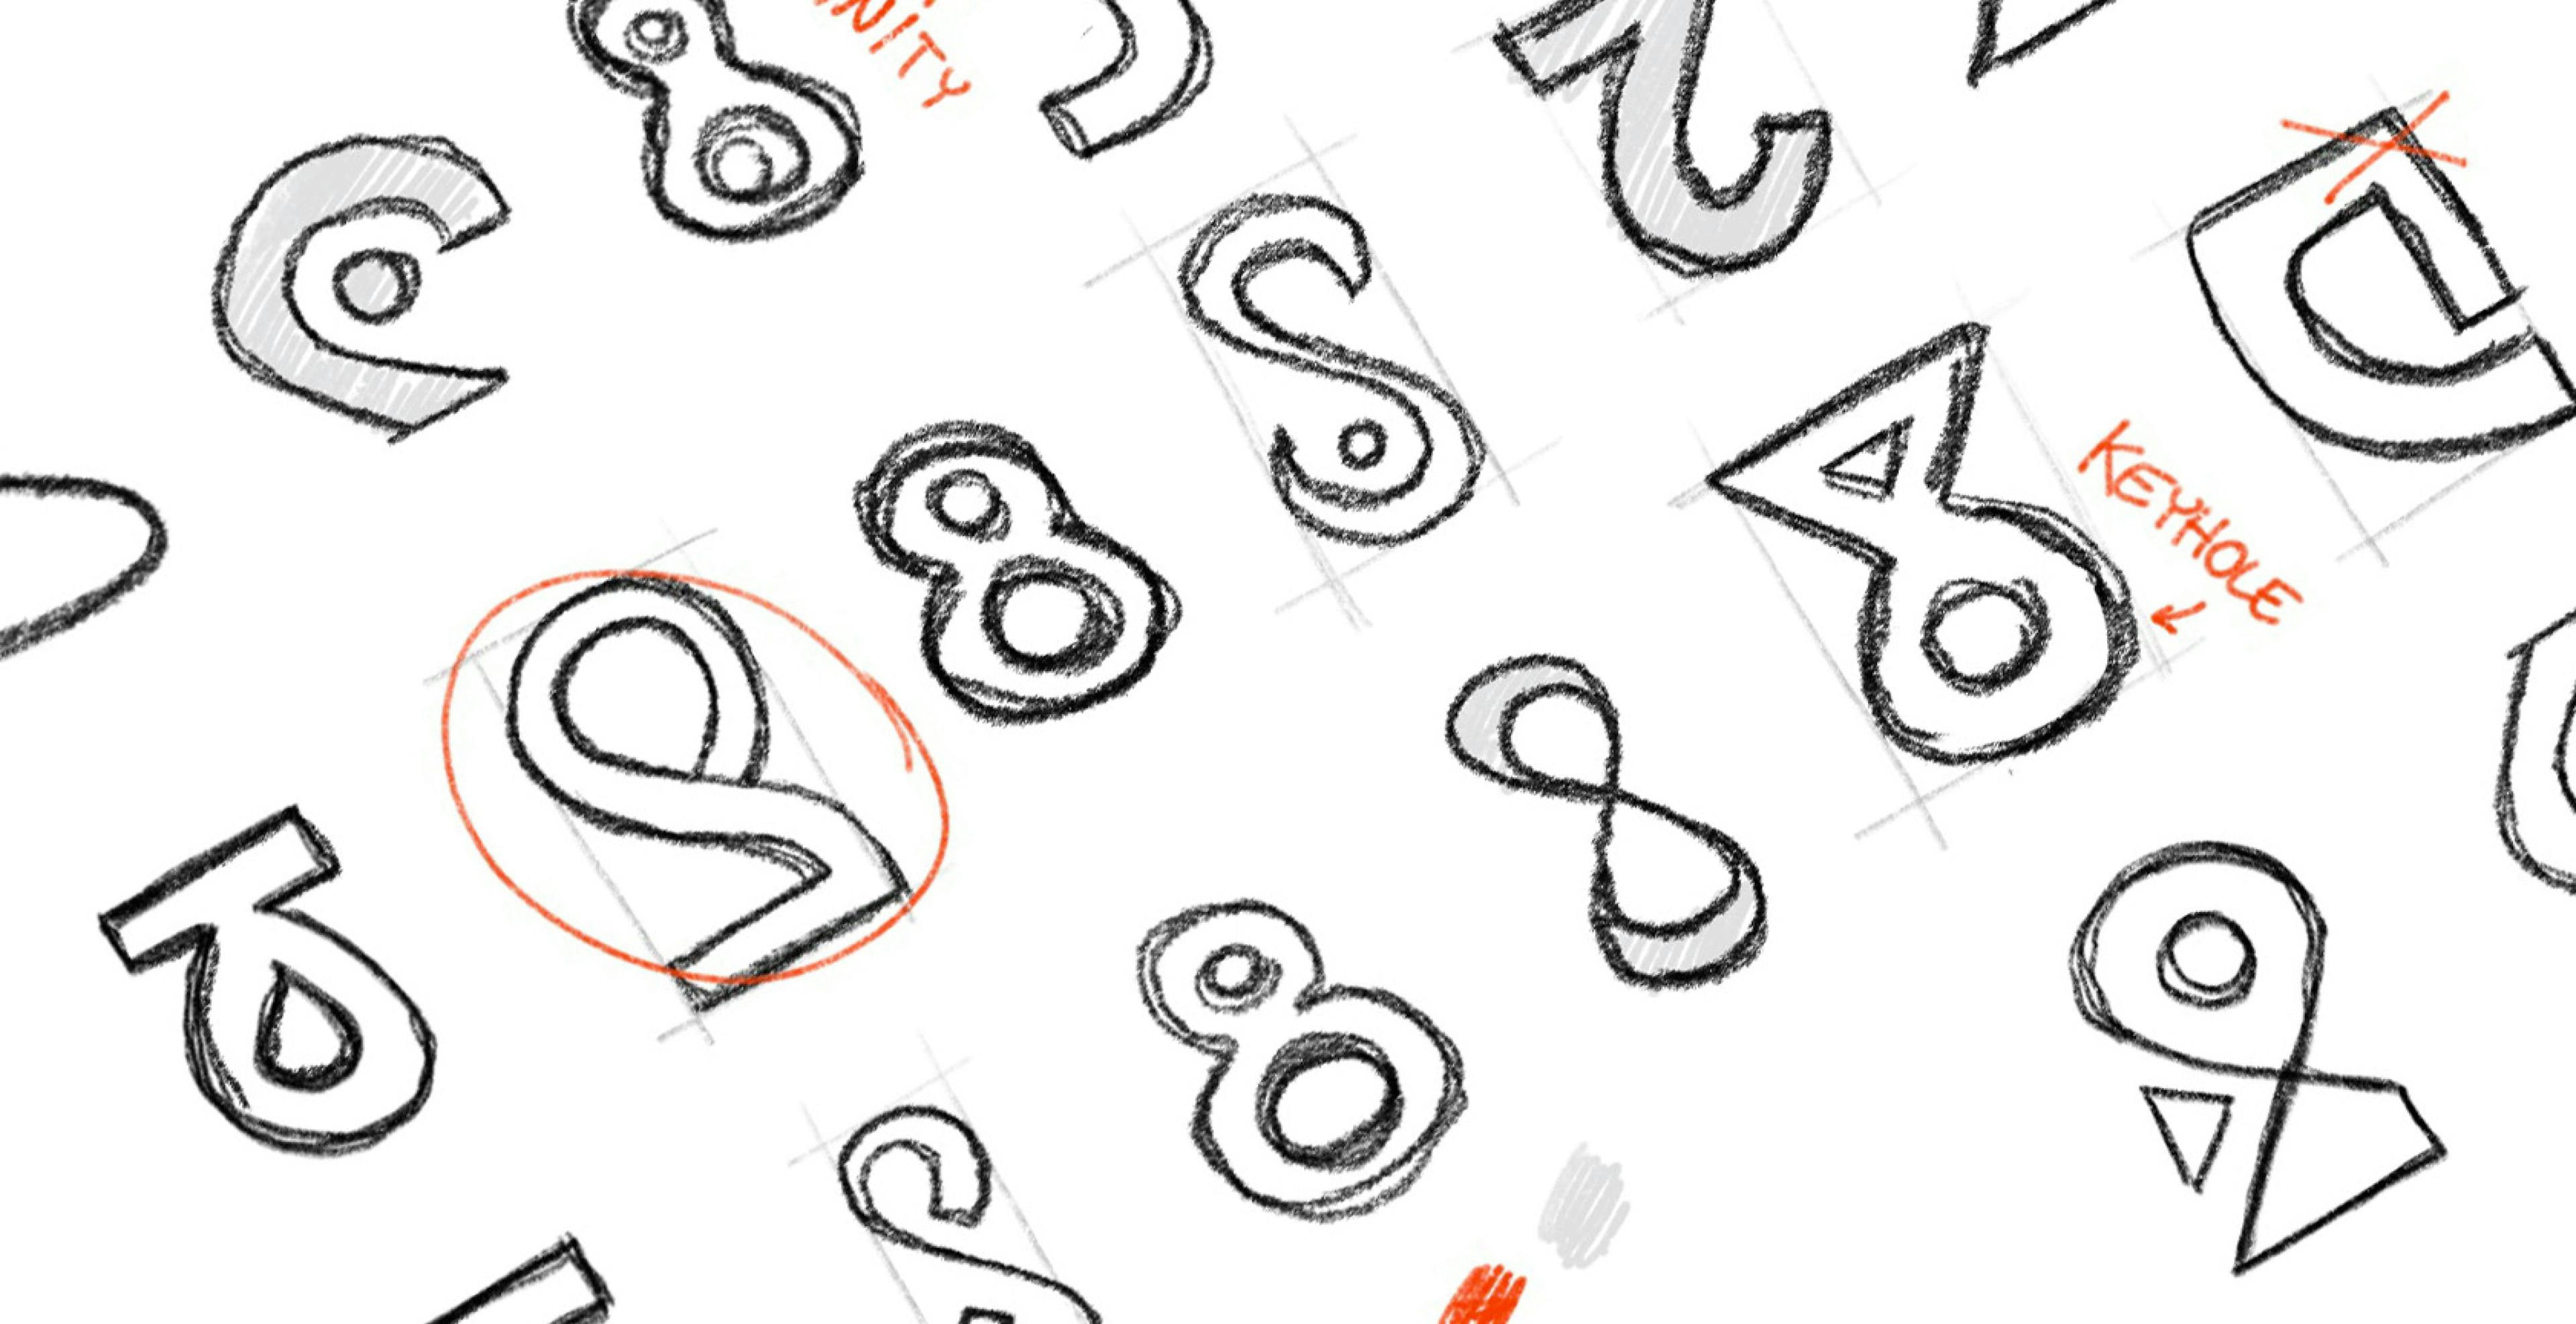 Entwurfsskizzen für das Hrtechventures-Logo